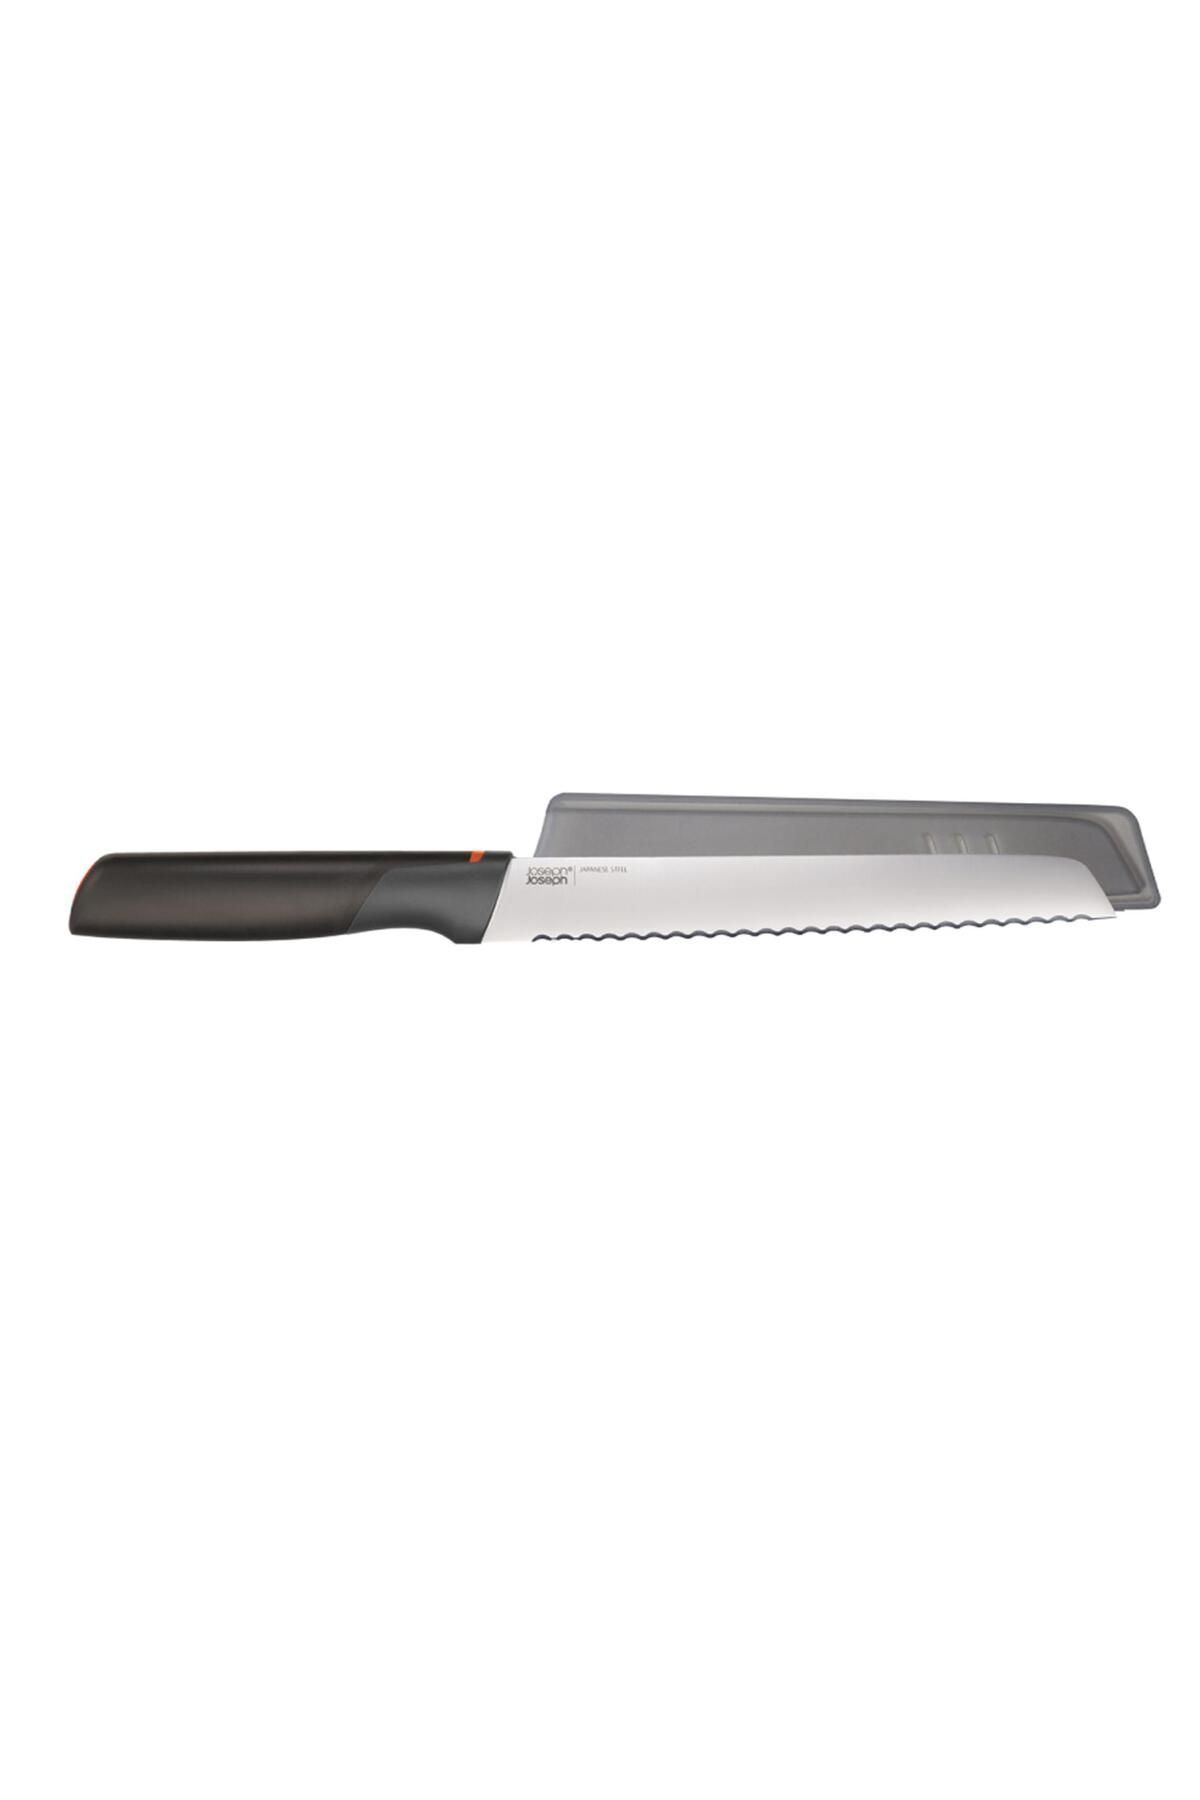 Joseph Joseph Elevate™ 20 Cm Kılıflı Ekmek Bıçağı